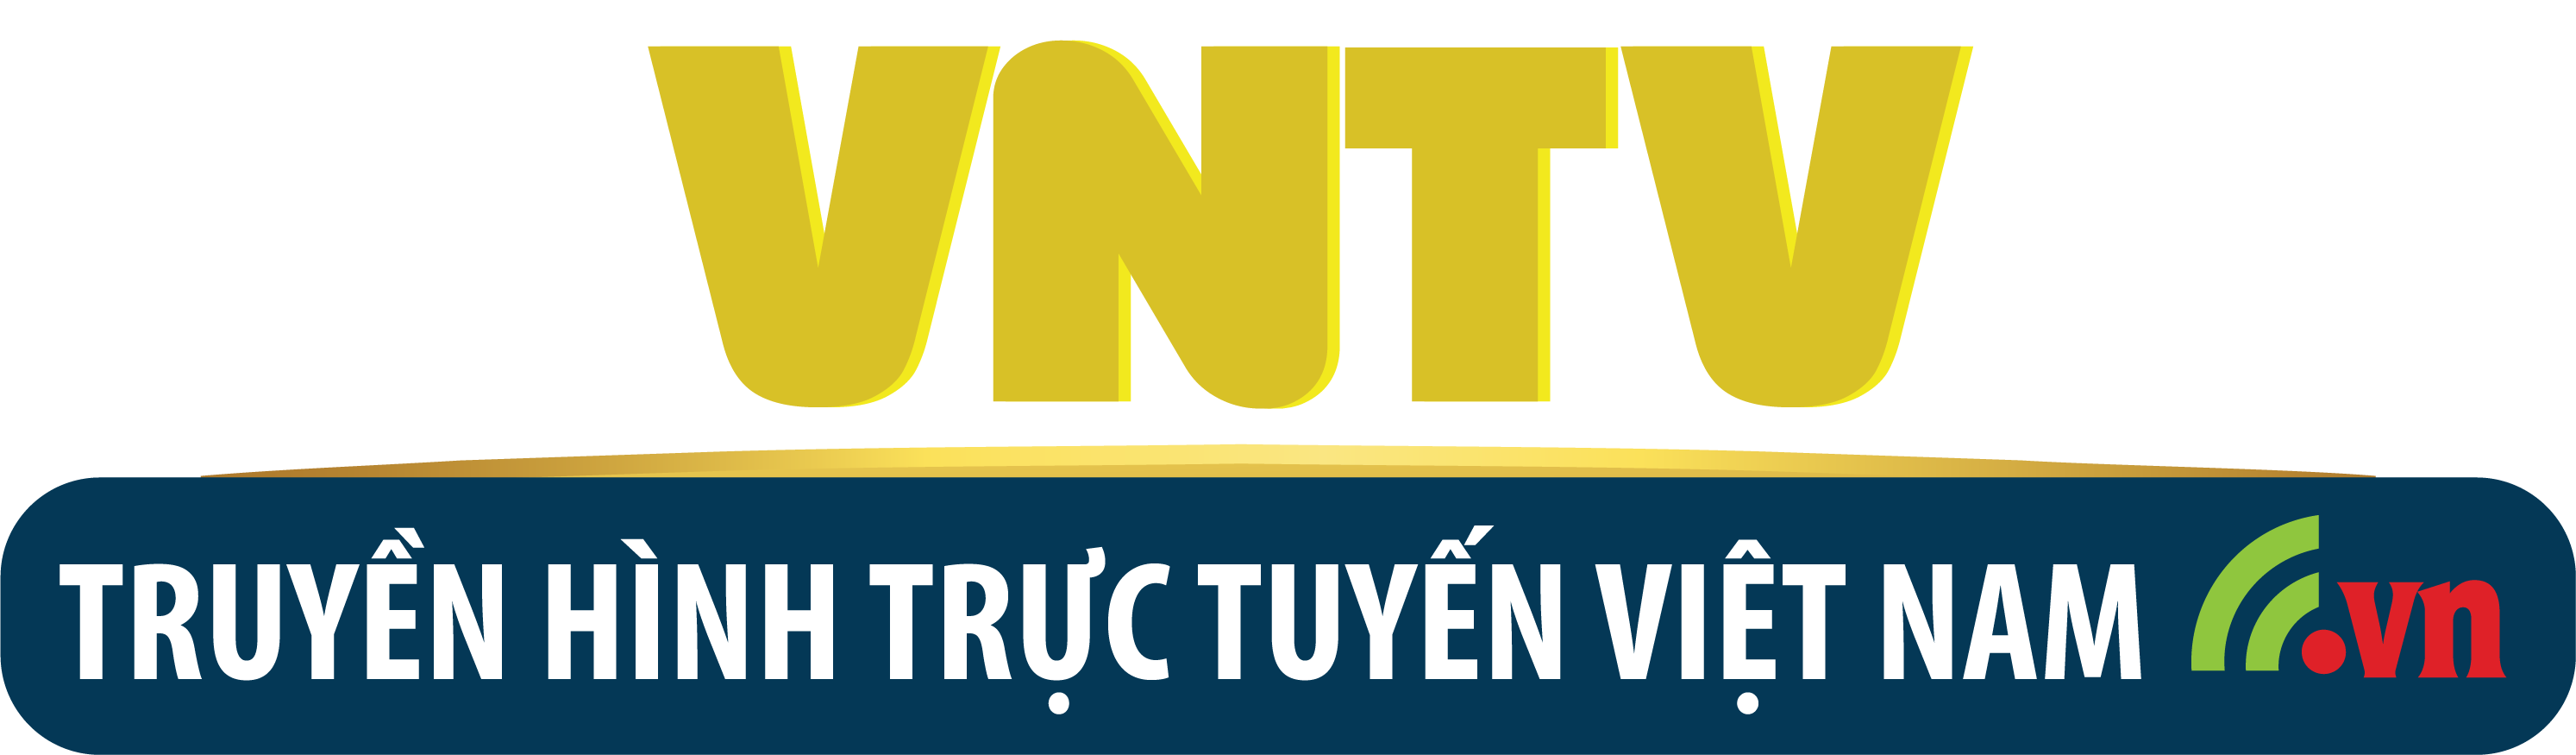 Truyền hình trực tuyến Việt Nam - VNTV